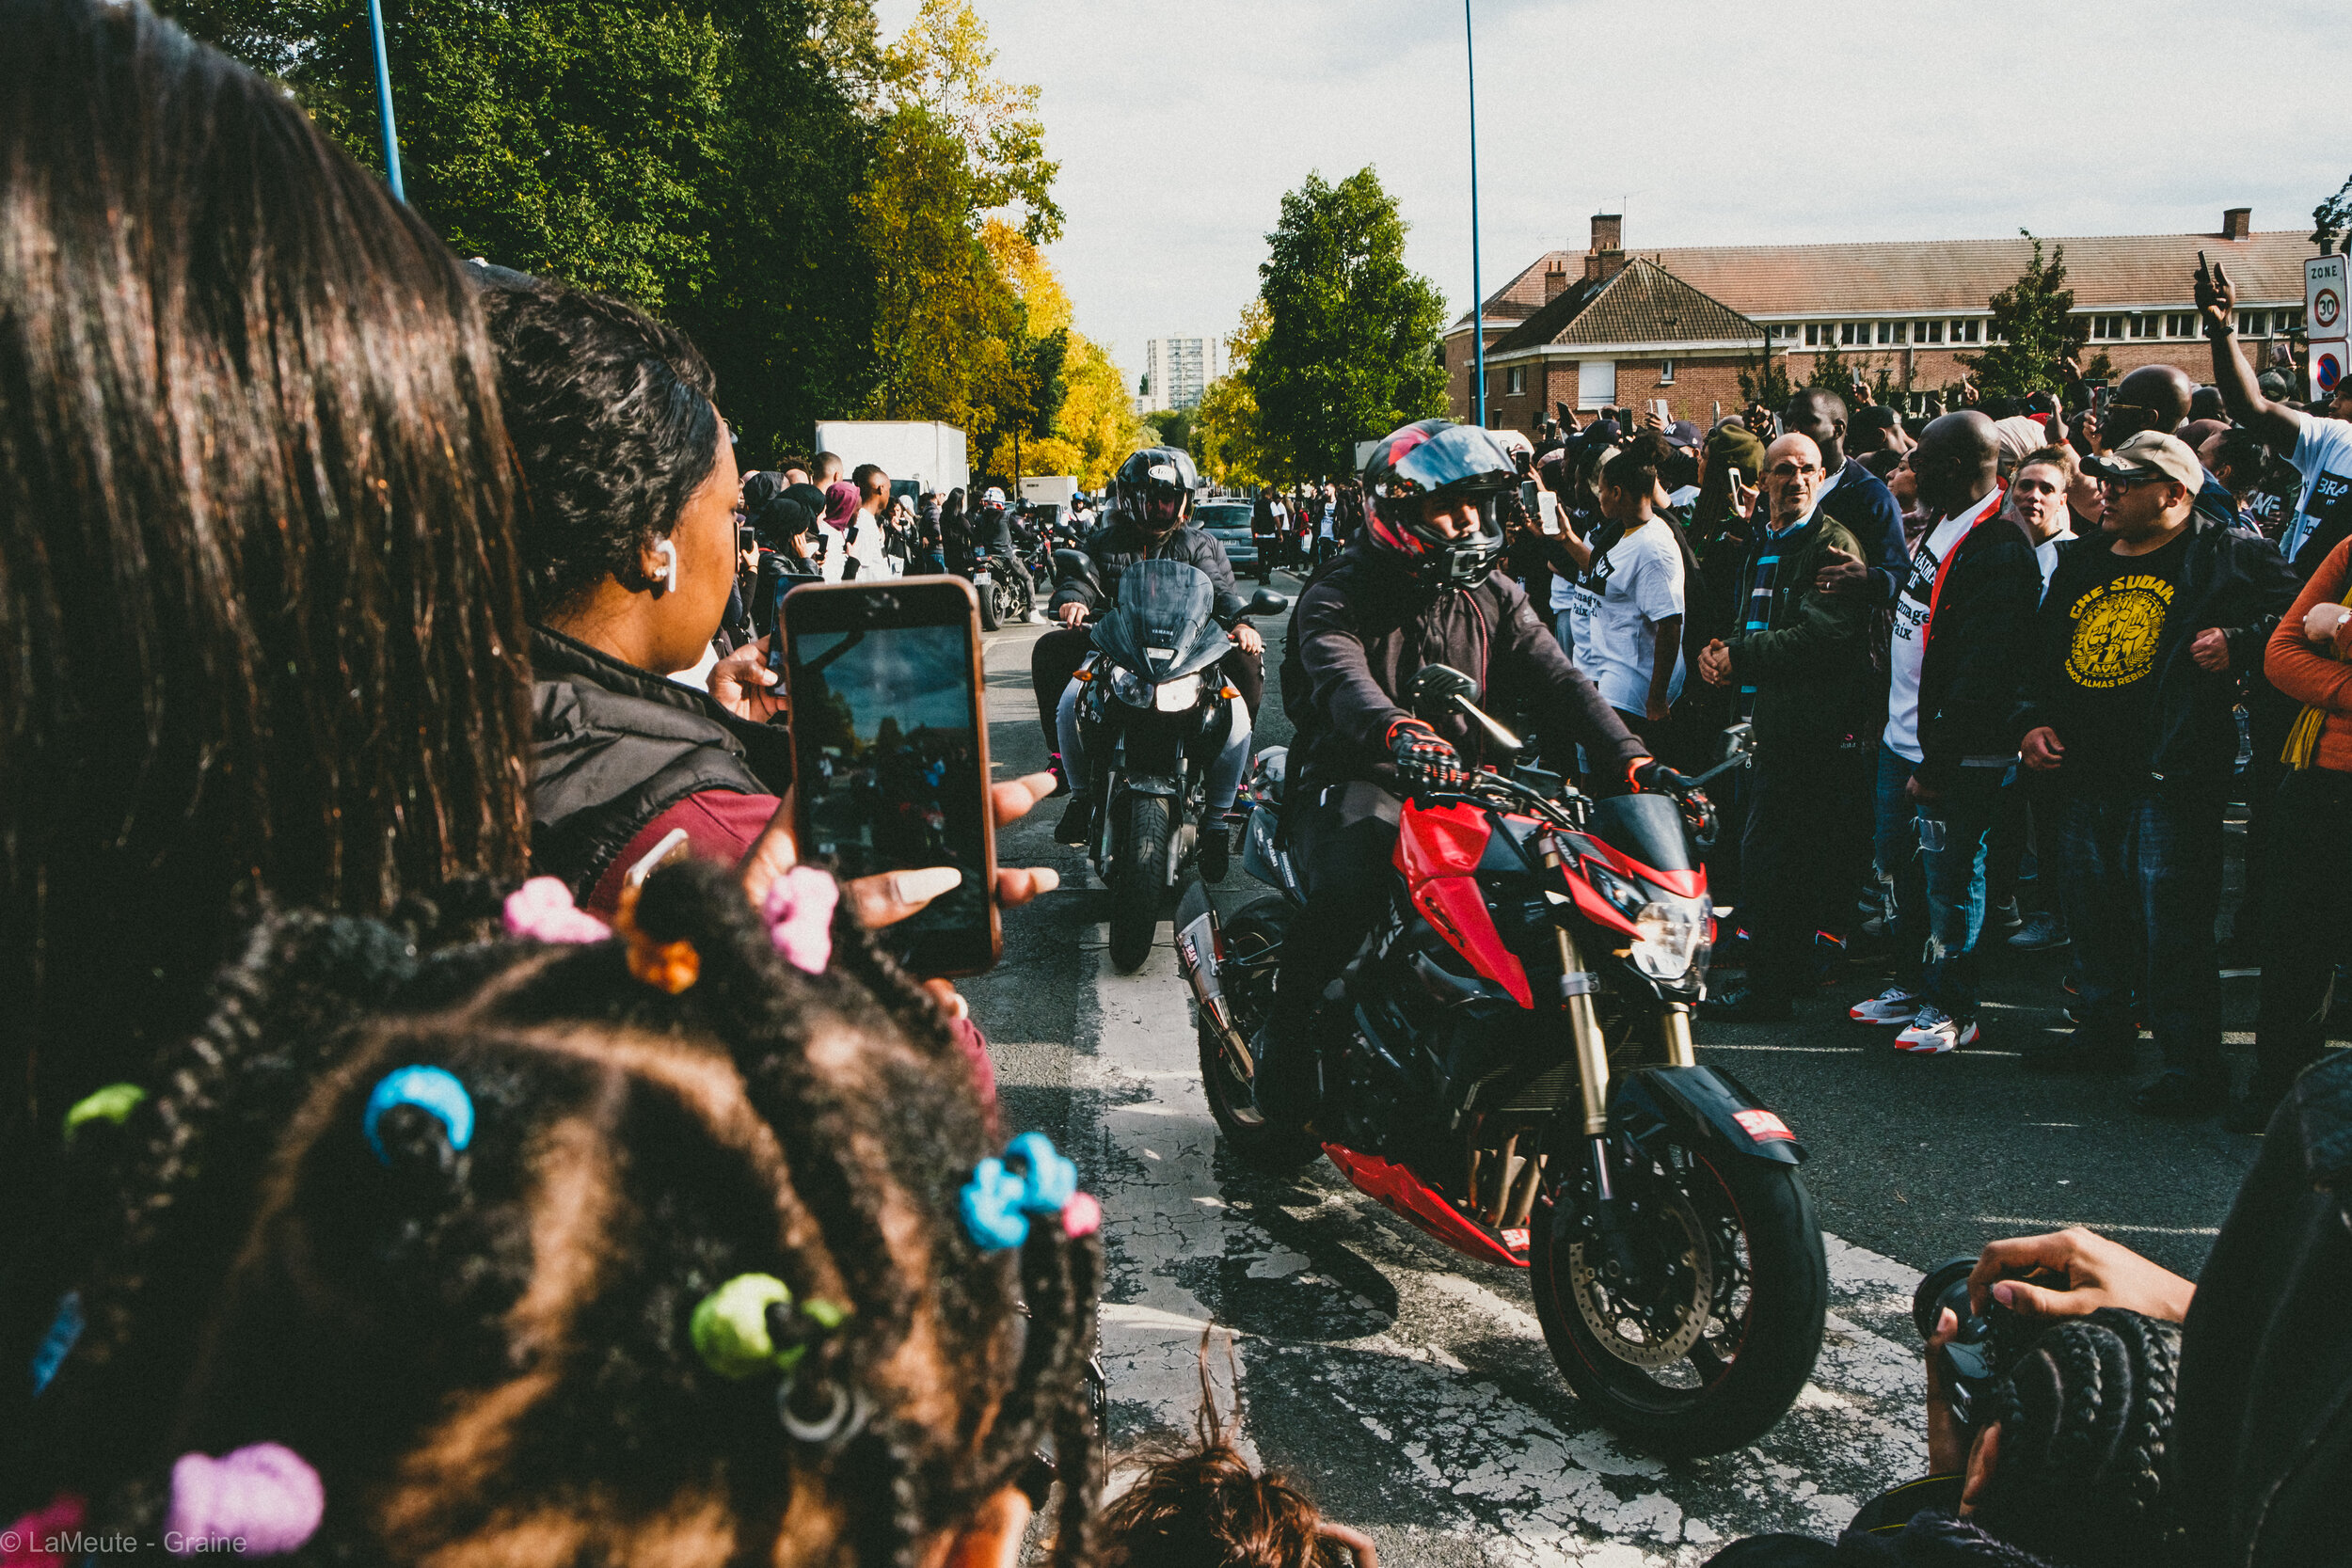   À l'endroit même où Ibrahima est mort à moto, les jeunes du quartier font une haie d'honneur à d'autres motards qui défilent dans le quartier. Le moment est fort en symbolique.  © LaMeute -Graine- 